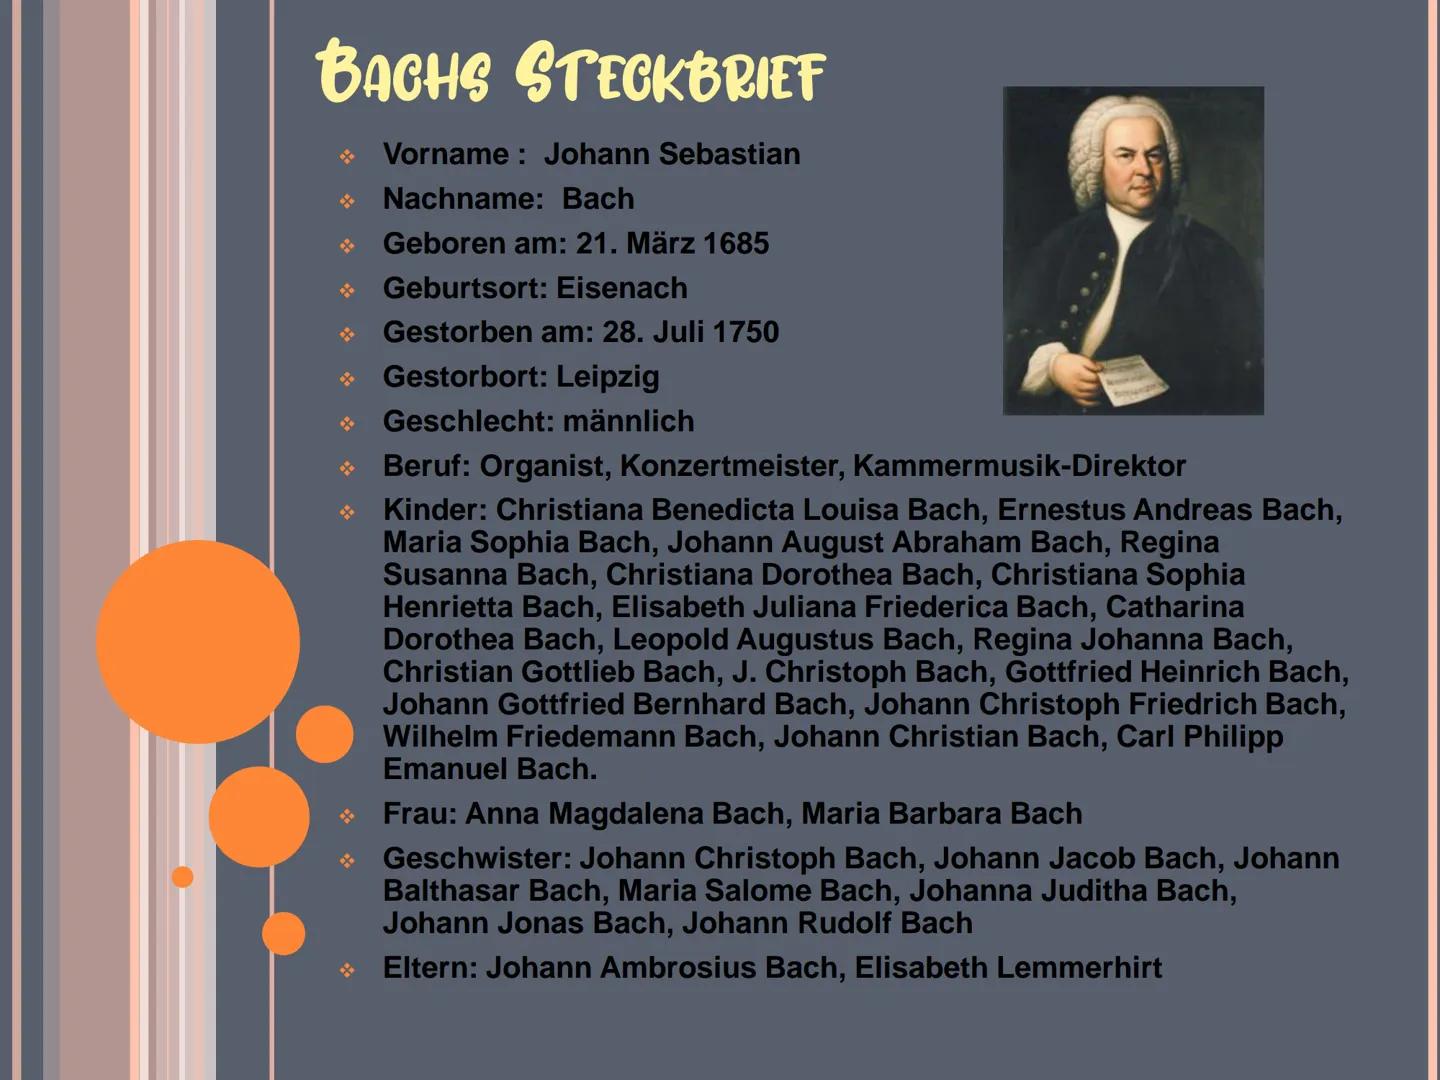 Johann Sebastian Bach INHALTSVERZEICHNIS
❖ Bachs Steckbrief
❖ Bachs Leben
◆ Die berühmtesten Werke
❖ Quelle BACHS STECKBRIEF
❖ Vorname: Joha